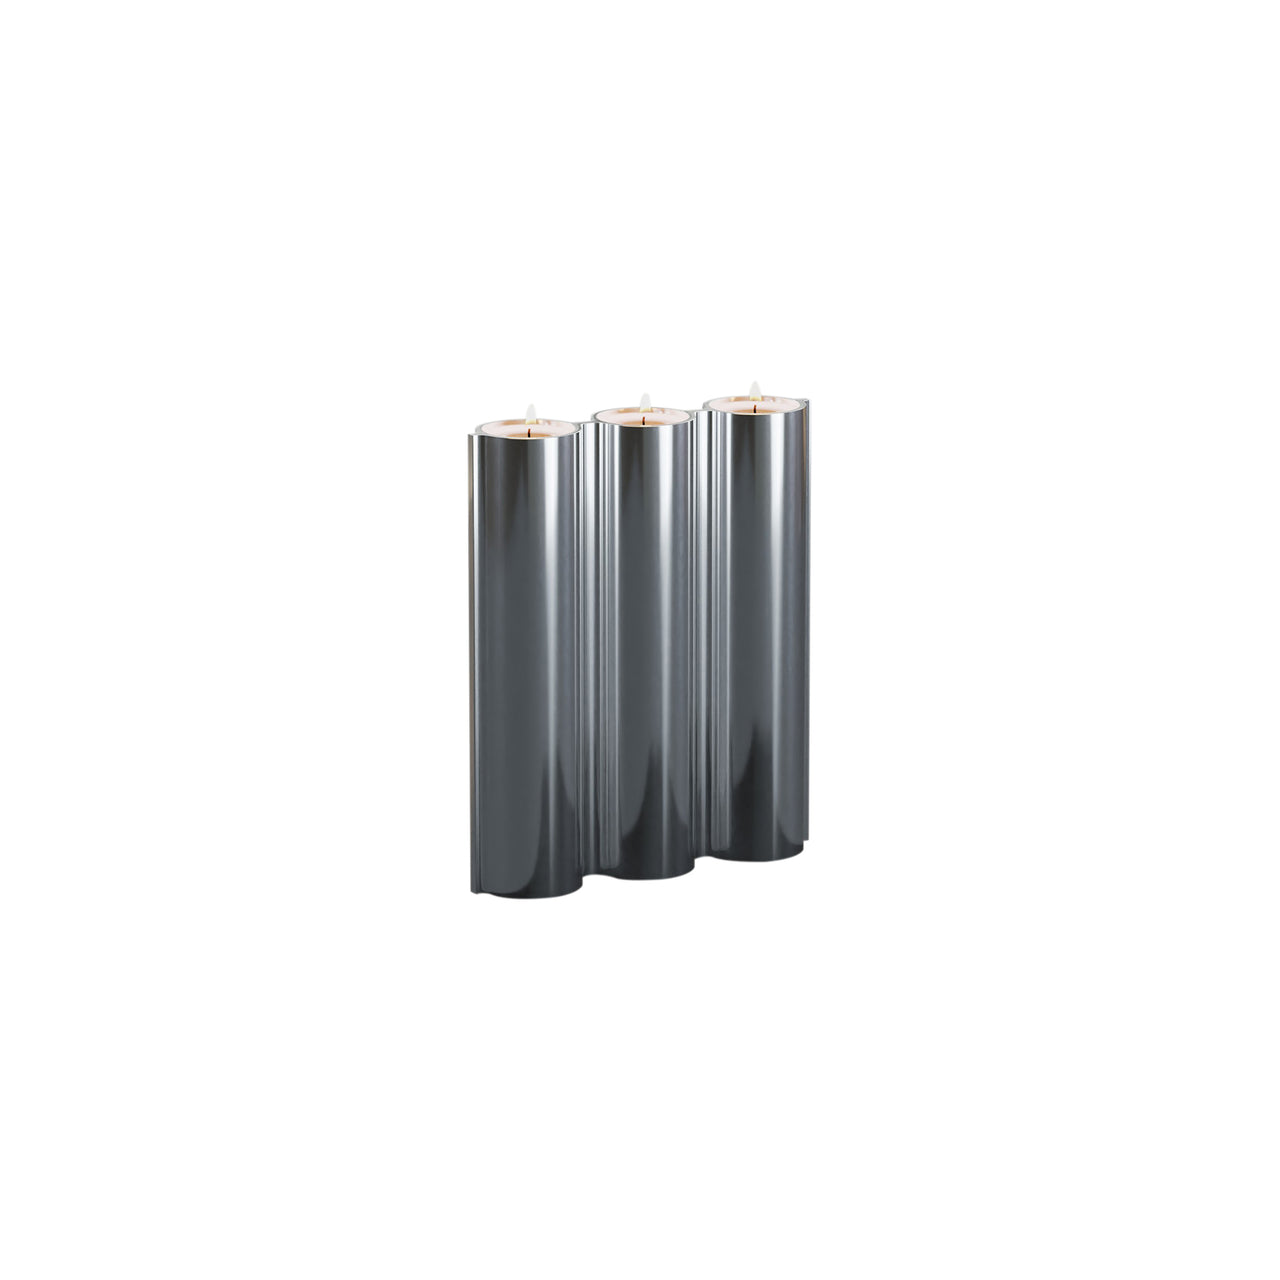 Silo 3VK Vase: Mirror Polished Aluminum